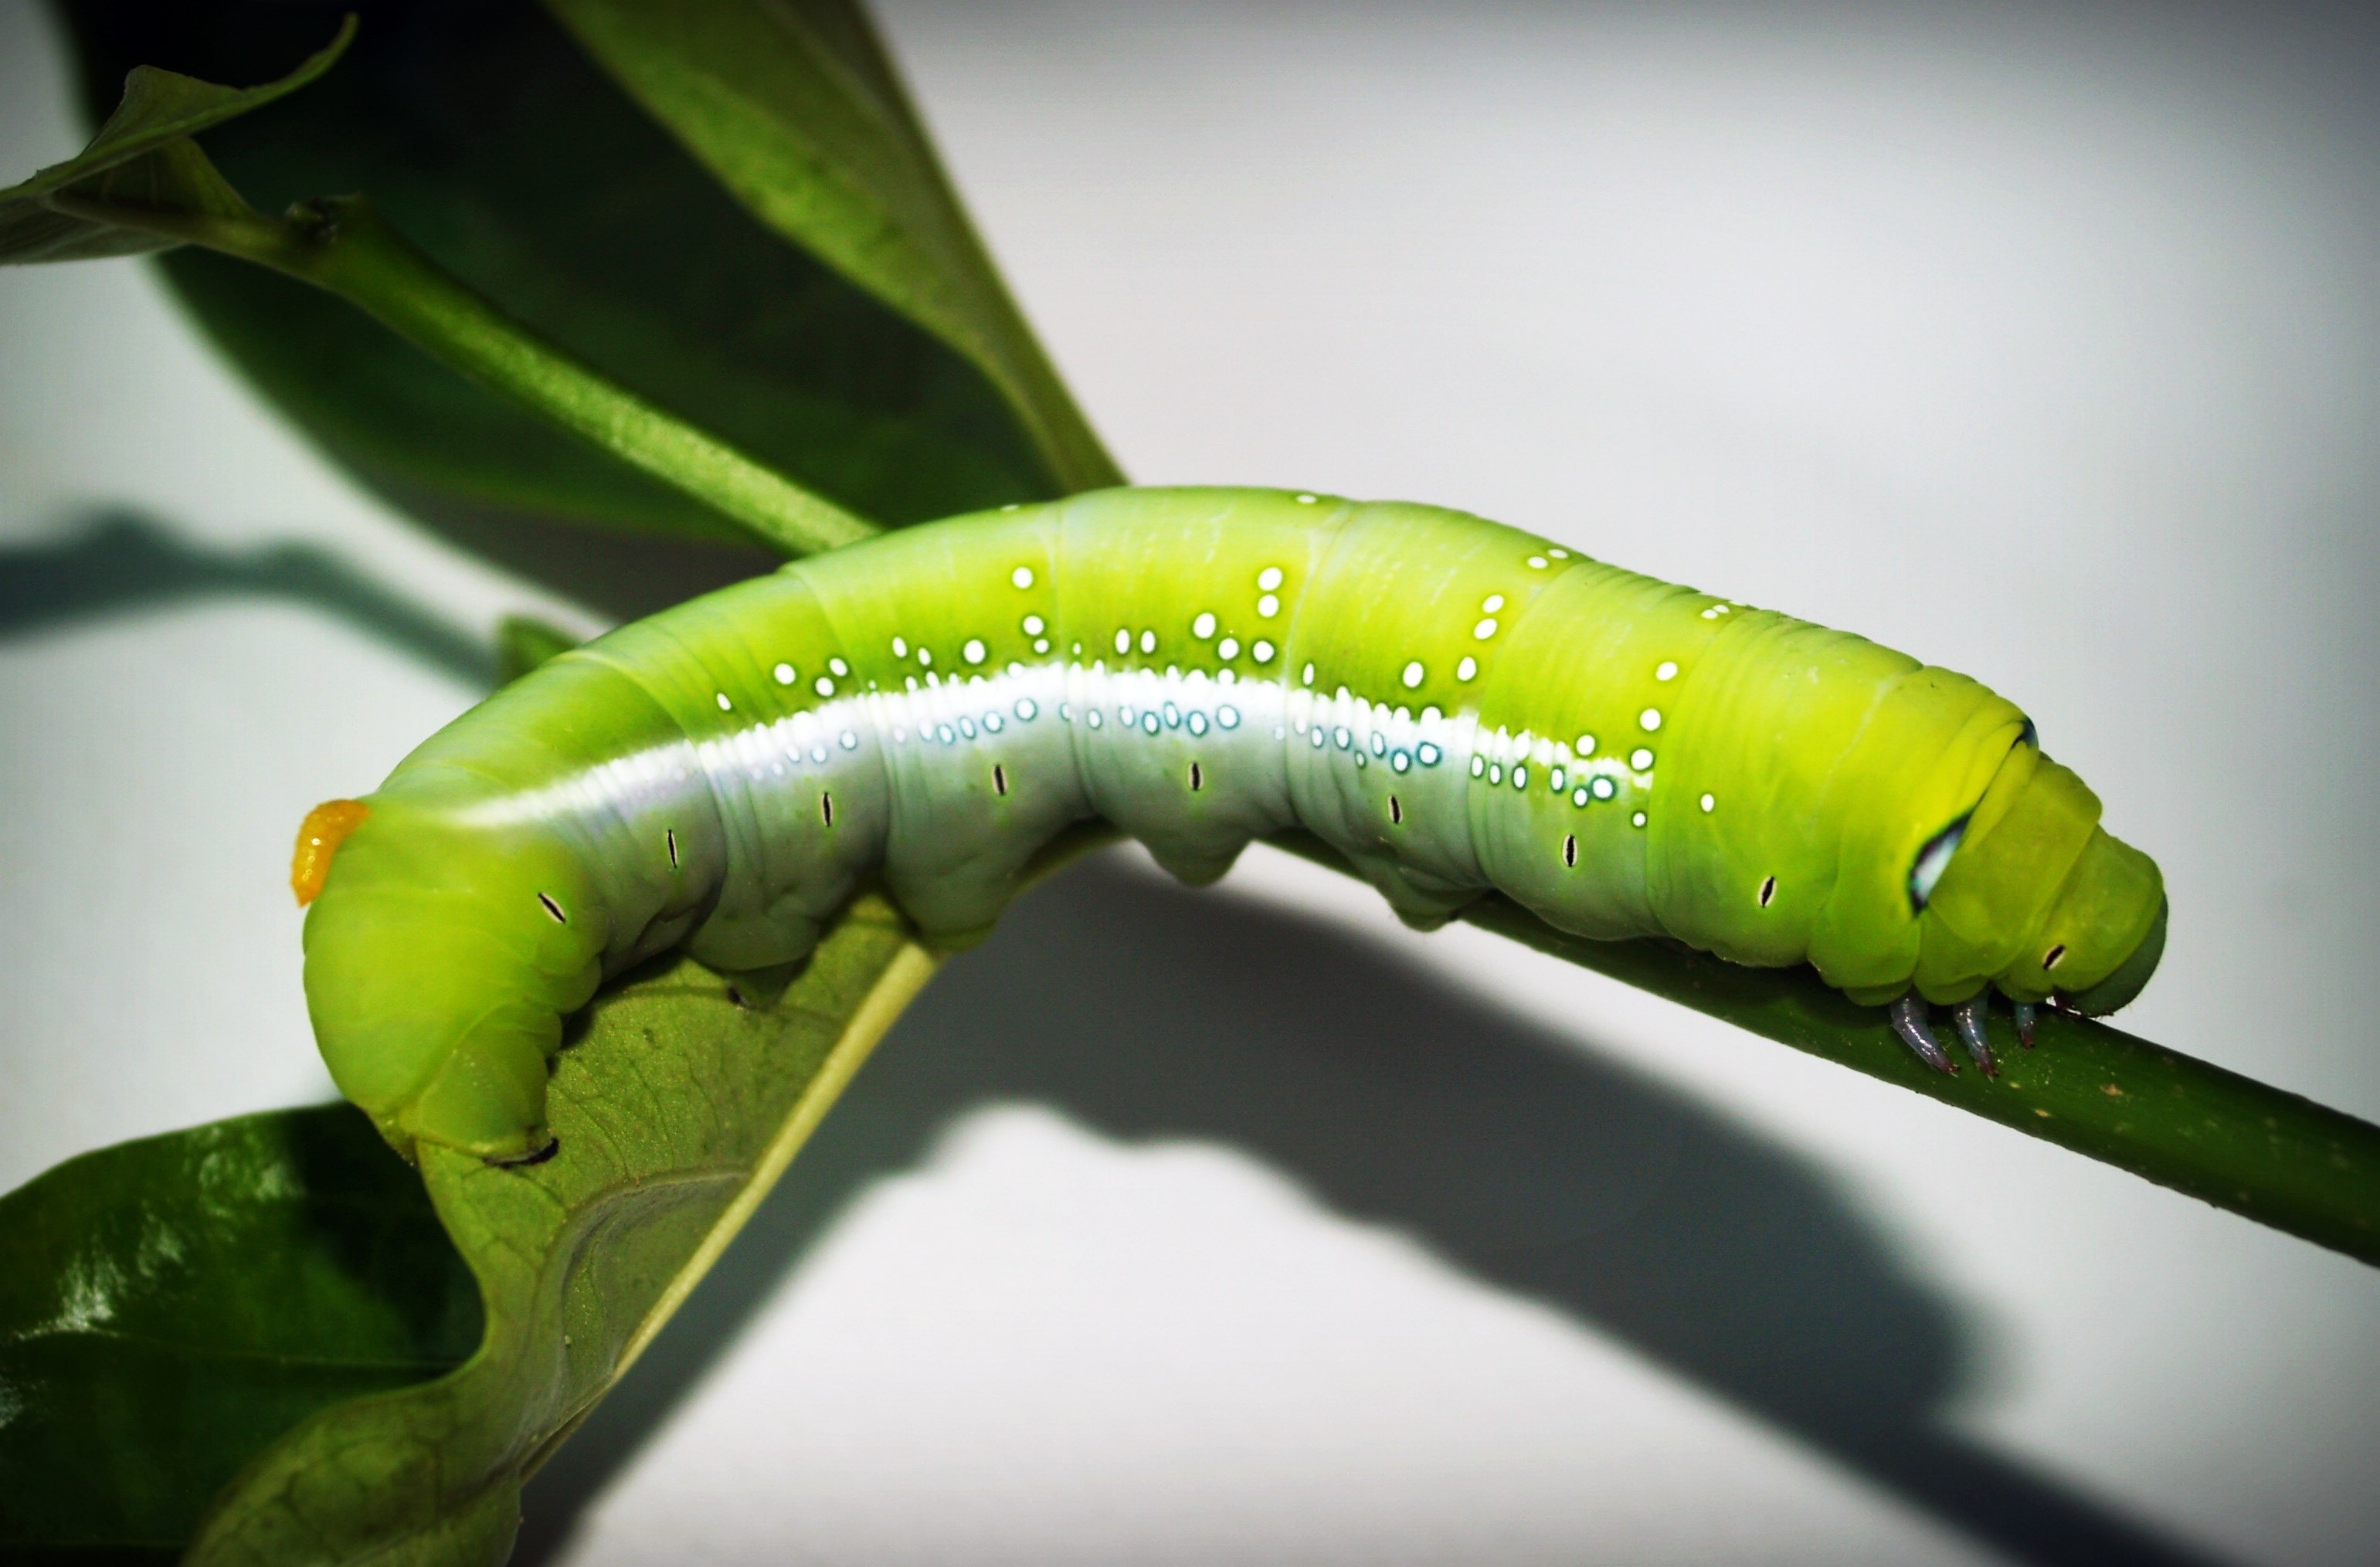 Green catteripillar on green plant